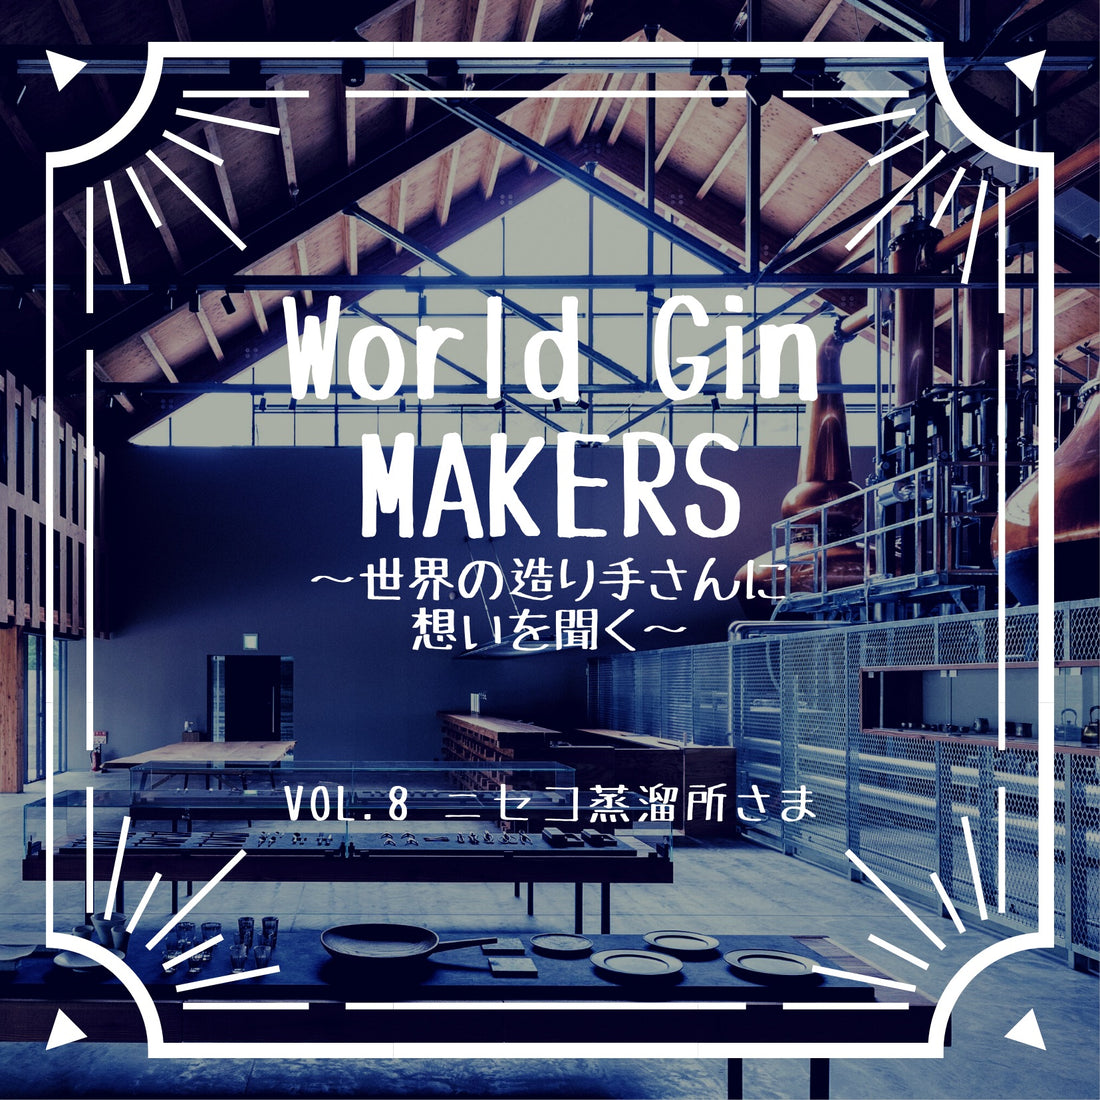 World Gin MAKERS〜世界の世界の造り手さんに想いを聞く〜vol.8ニセコ蒸溜所